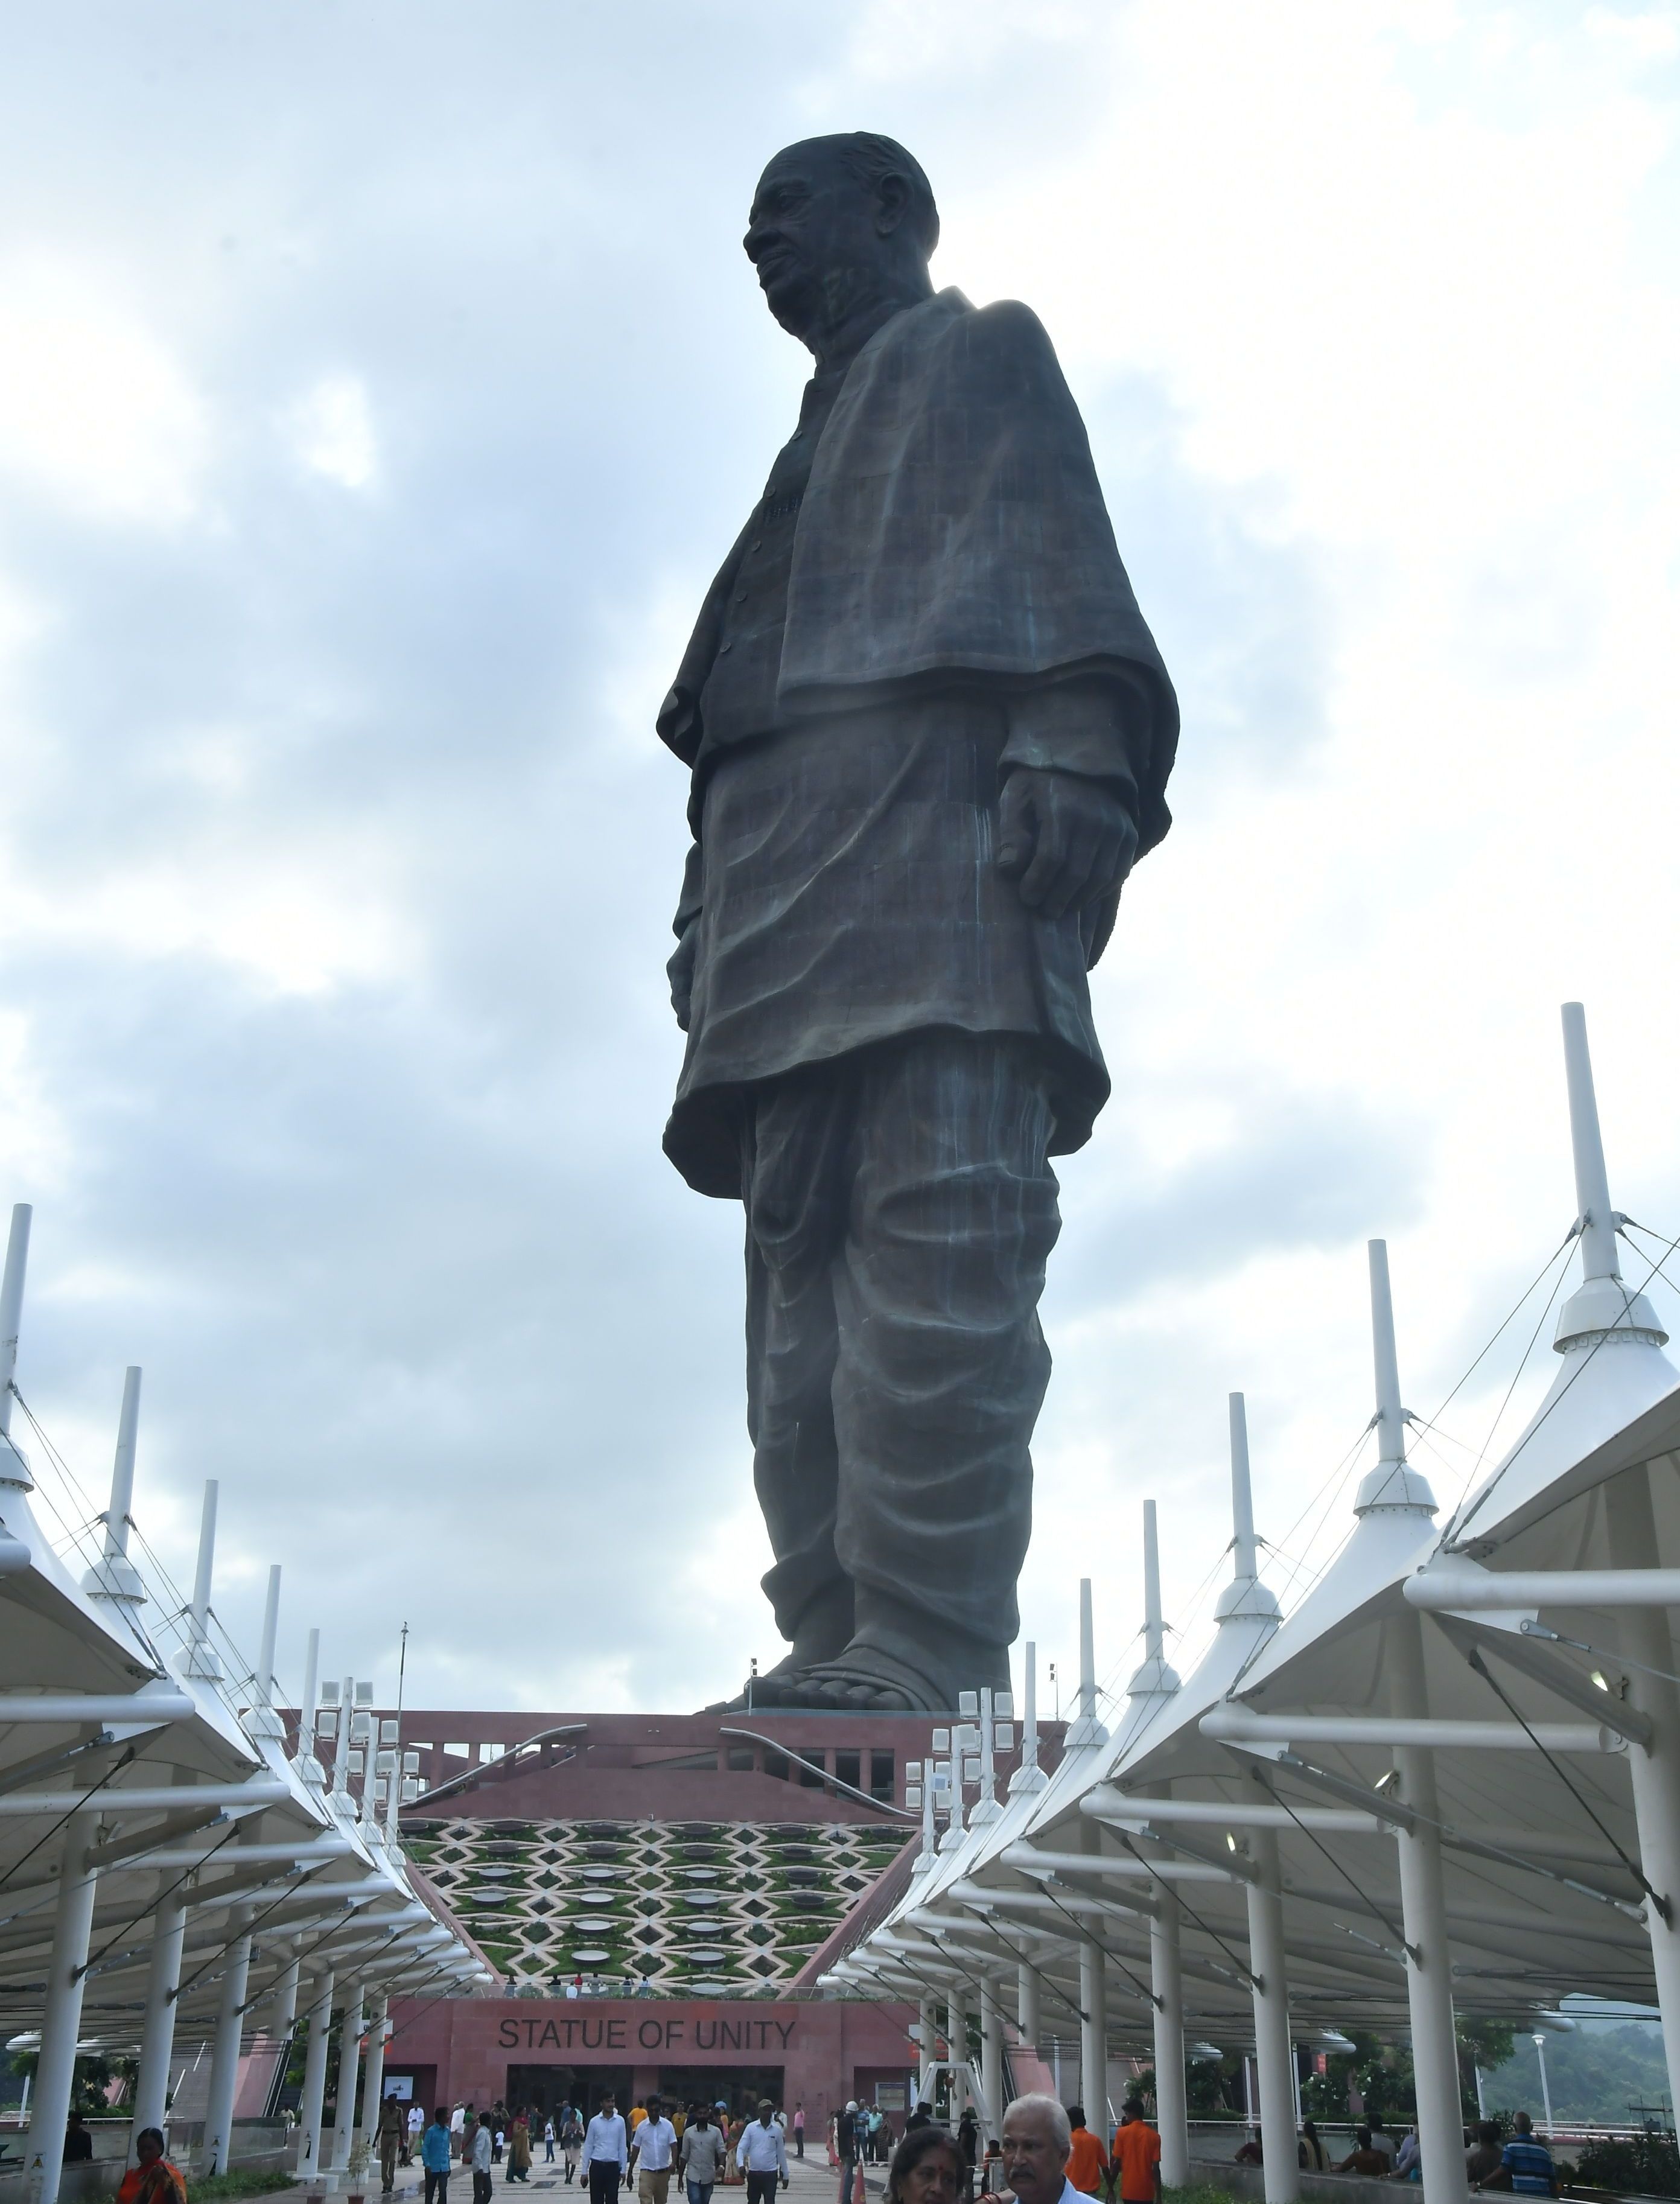 statue of unity : 'यूनिटी' ने तोड़े रिकॉर्ड पर नहीं जुटे विदेशी सैलानी